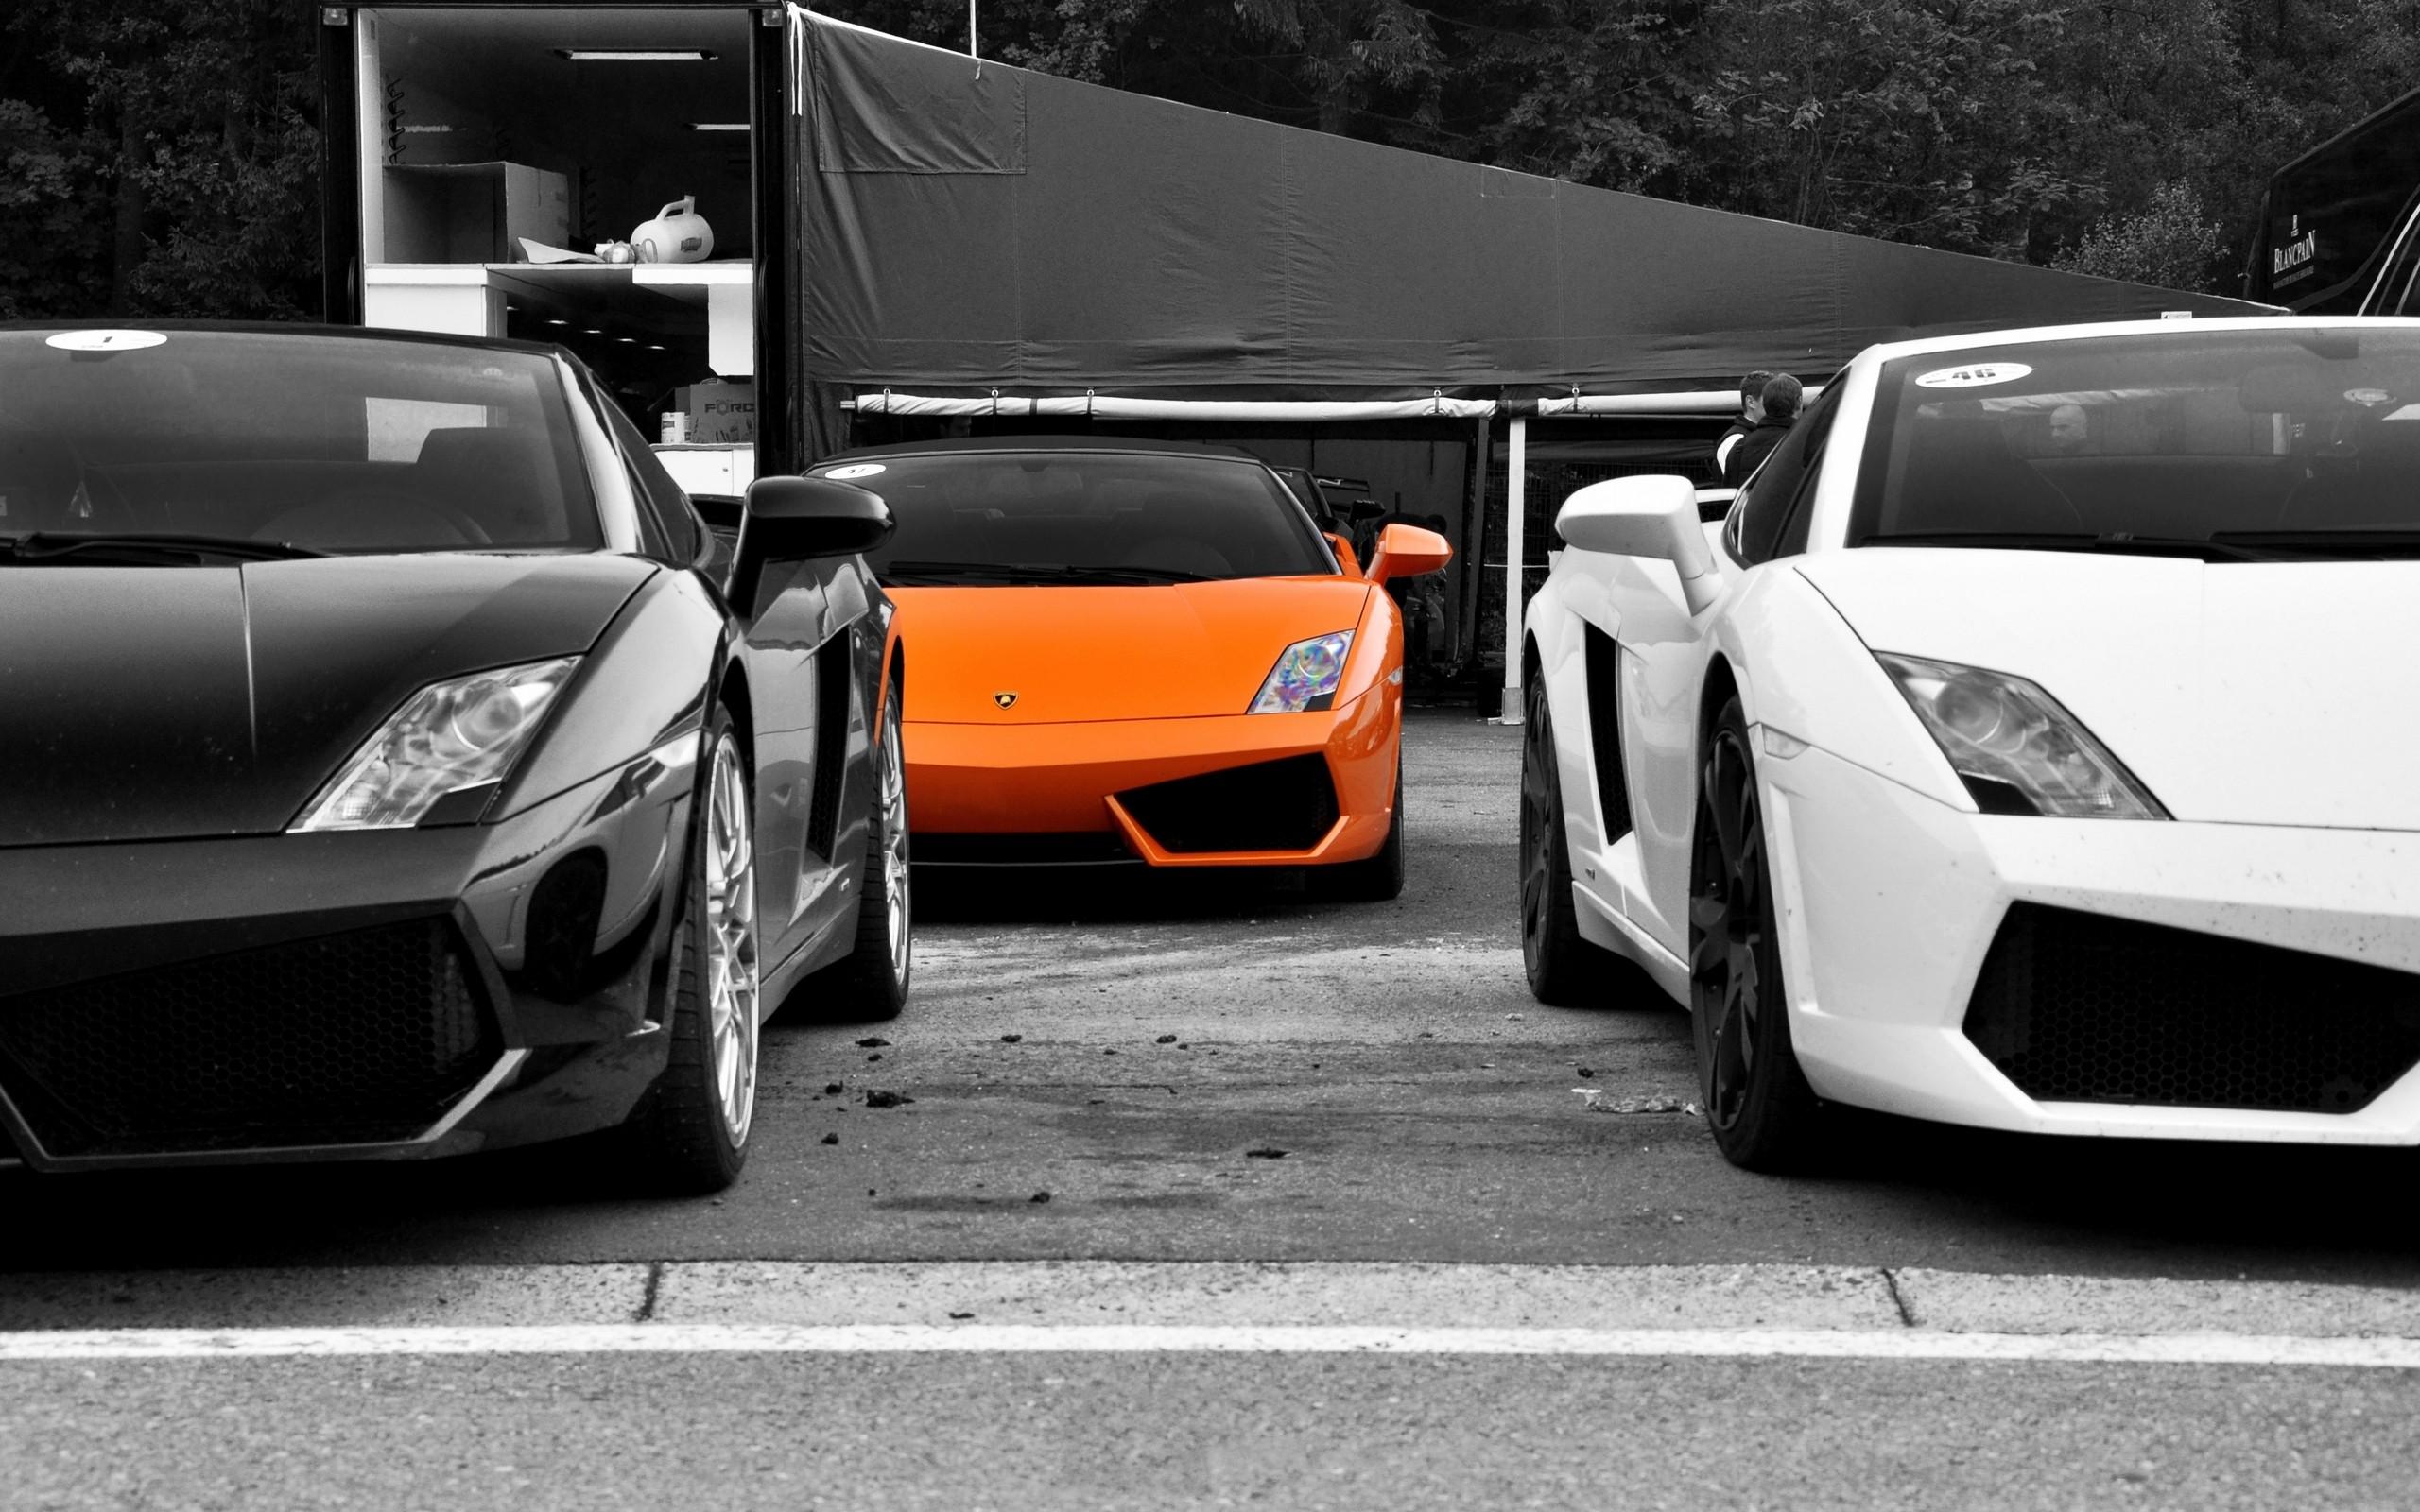 black, white, cars, vehicles, selective coloring, Lamborghini